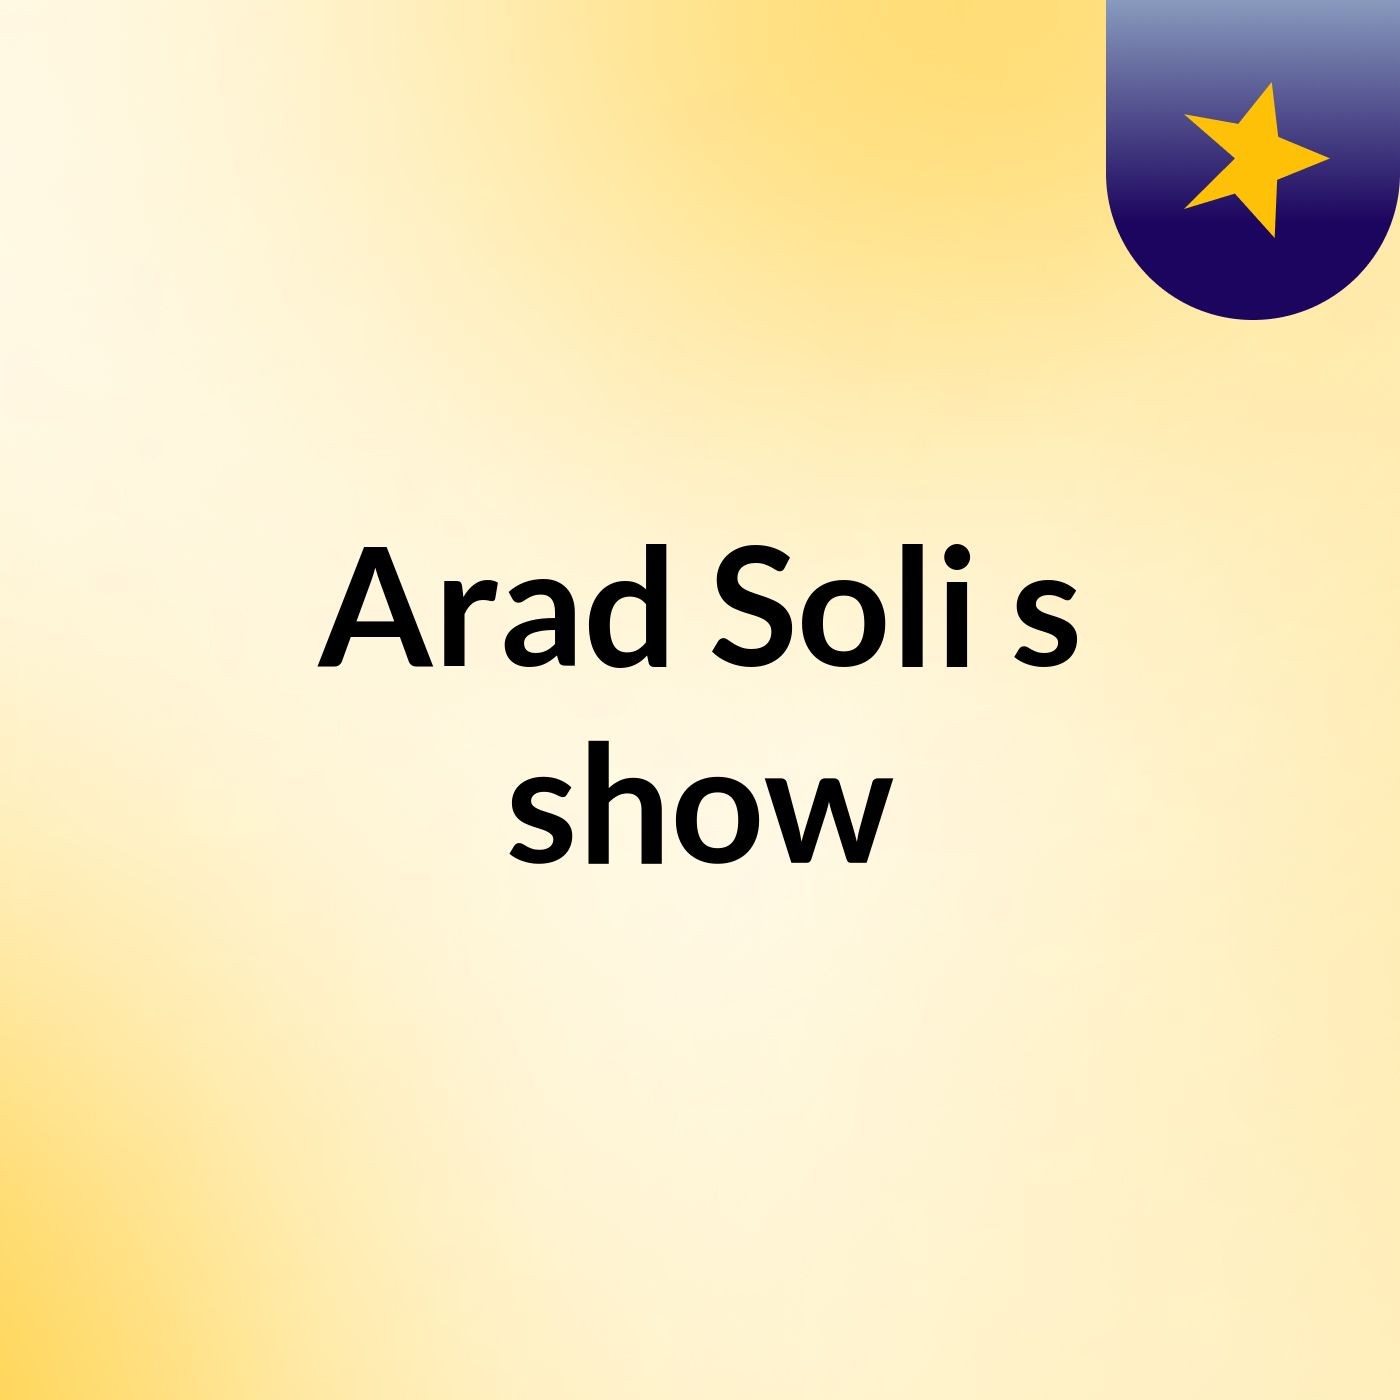 Arad Soli's show